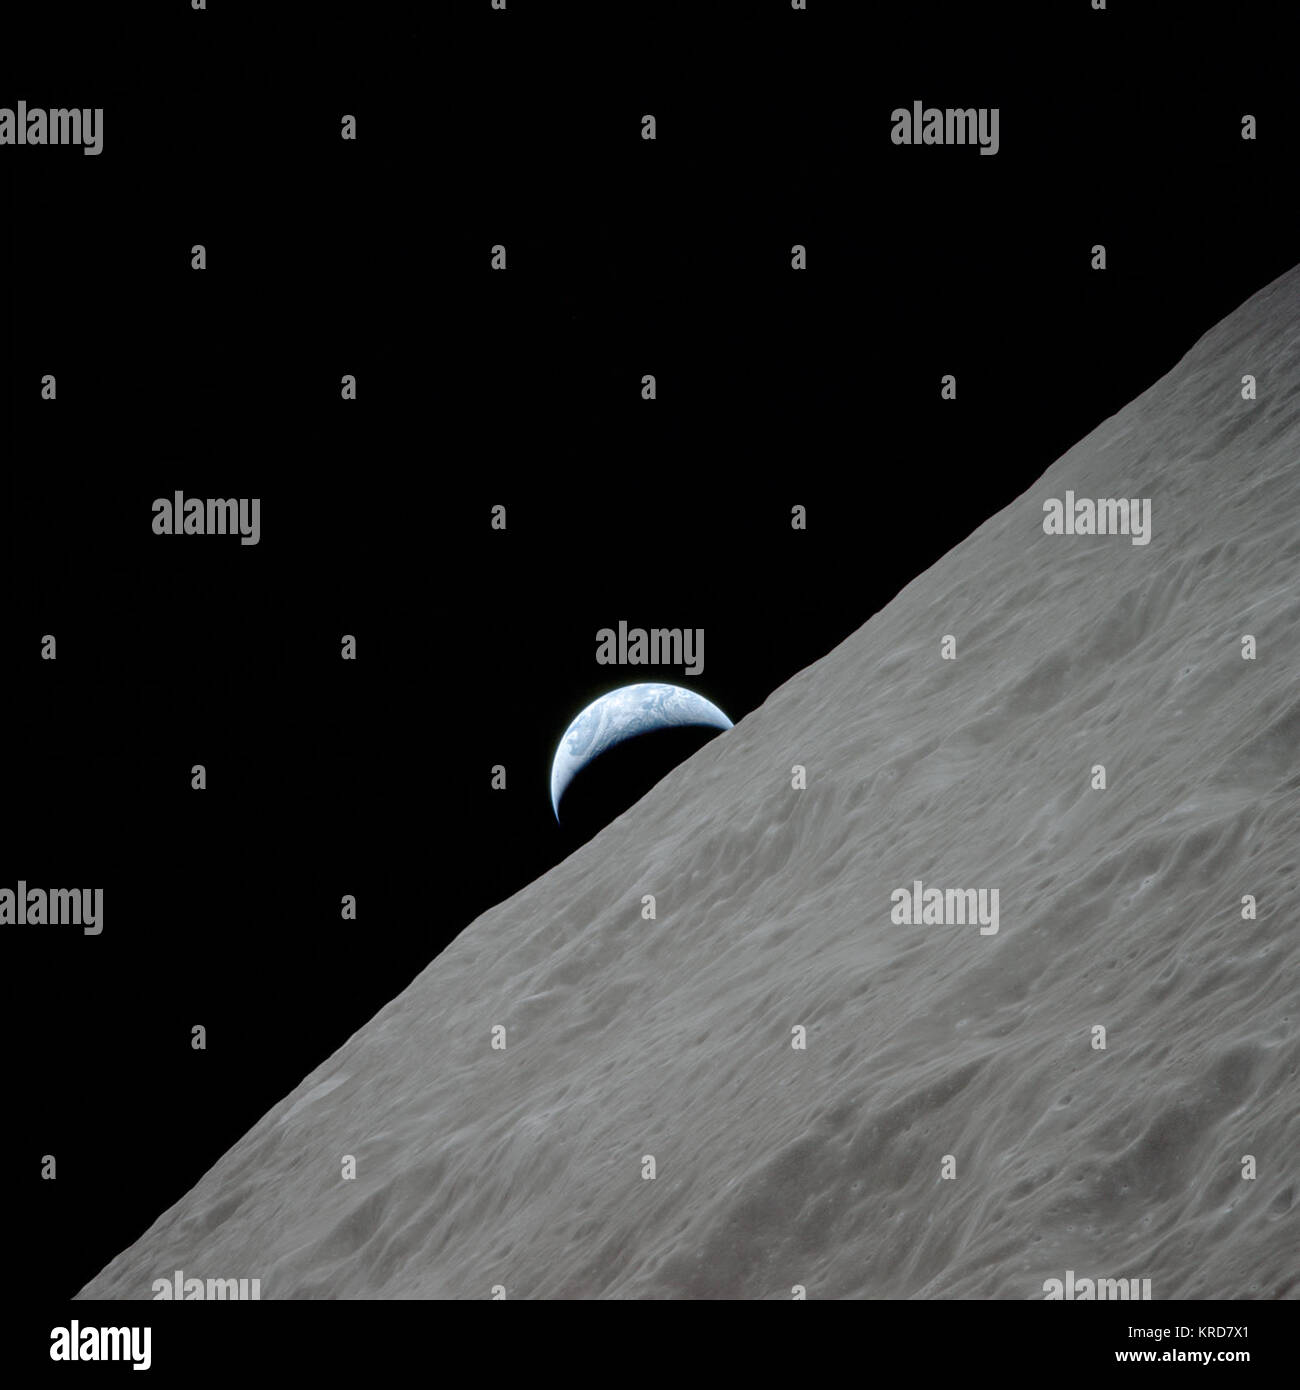 Vista del crescente aumento di massa sopra l'orizzonte lunare oltre il Ritz cratere. Immagine scattata durante la missione Apollo 17 sulla rivoluzione 66. Pellicola originale magazine è stato marcato PP. Tipo di pellicola era così-368 Color Ektachrome MS CEX,l'Inversione dei colori, 250mm., 98,2 longitudine est, Azimut 264, altitudine 113 km. Identificatore della NASA: come17-152-23274 mezza luna calante la terra vista dalla Luna Foto Stock